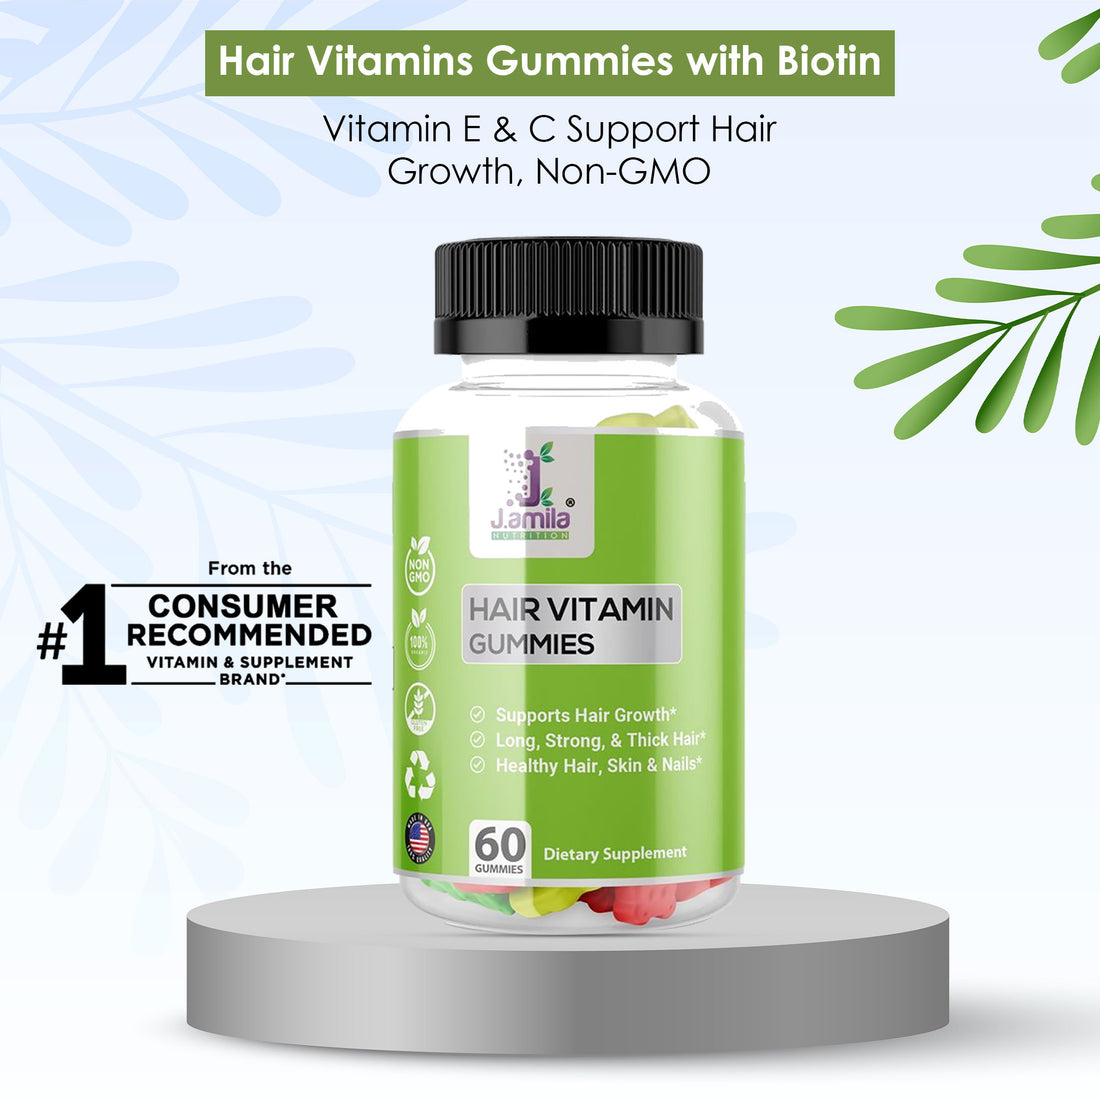 J. AMILA Hair Vitamin Gummies (60ct)